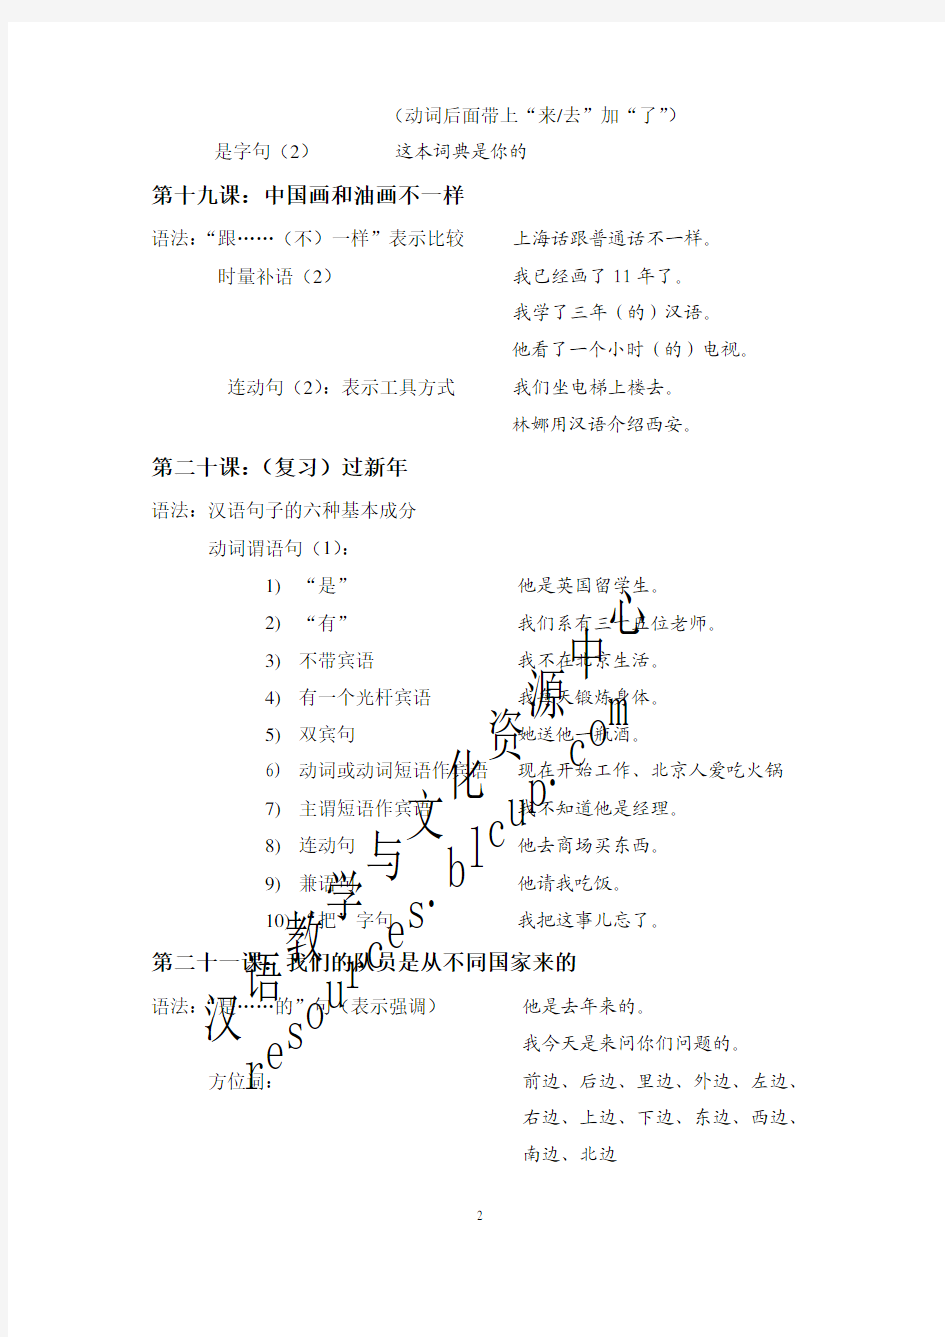 《新实用汉语课本》课文内容及其语法排序 第二册